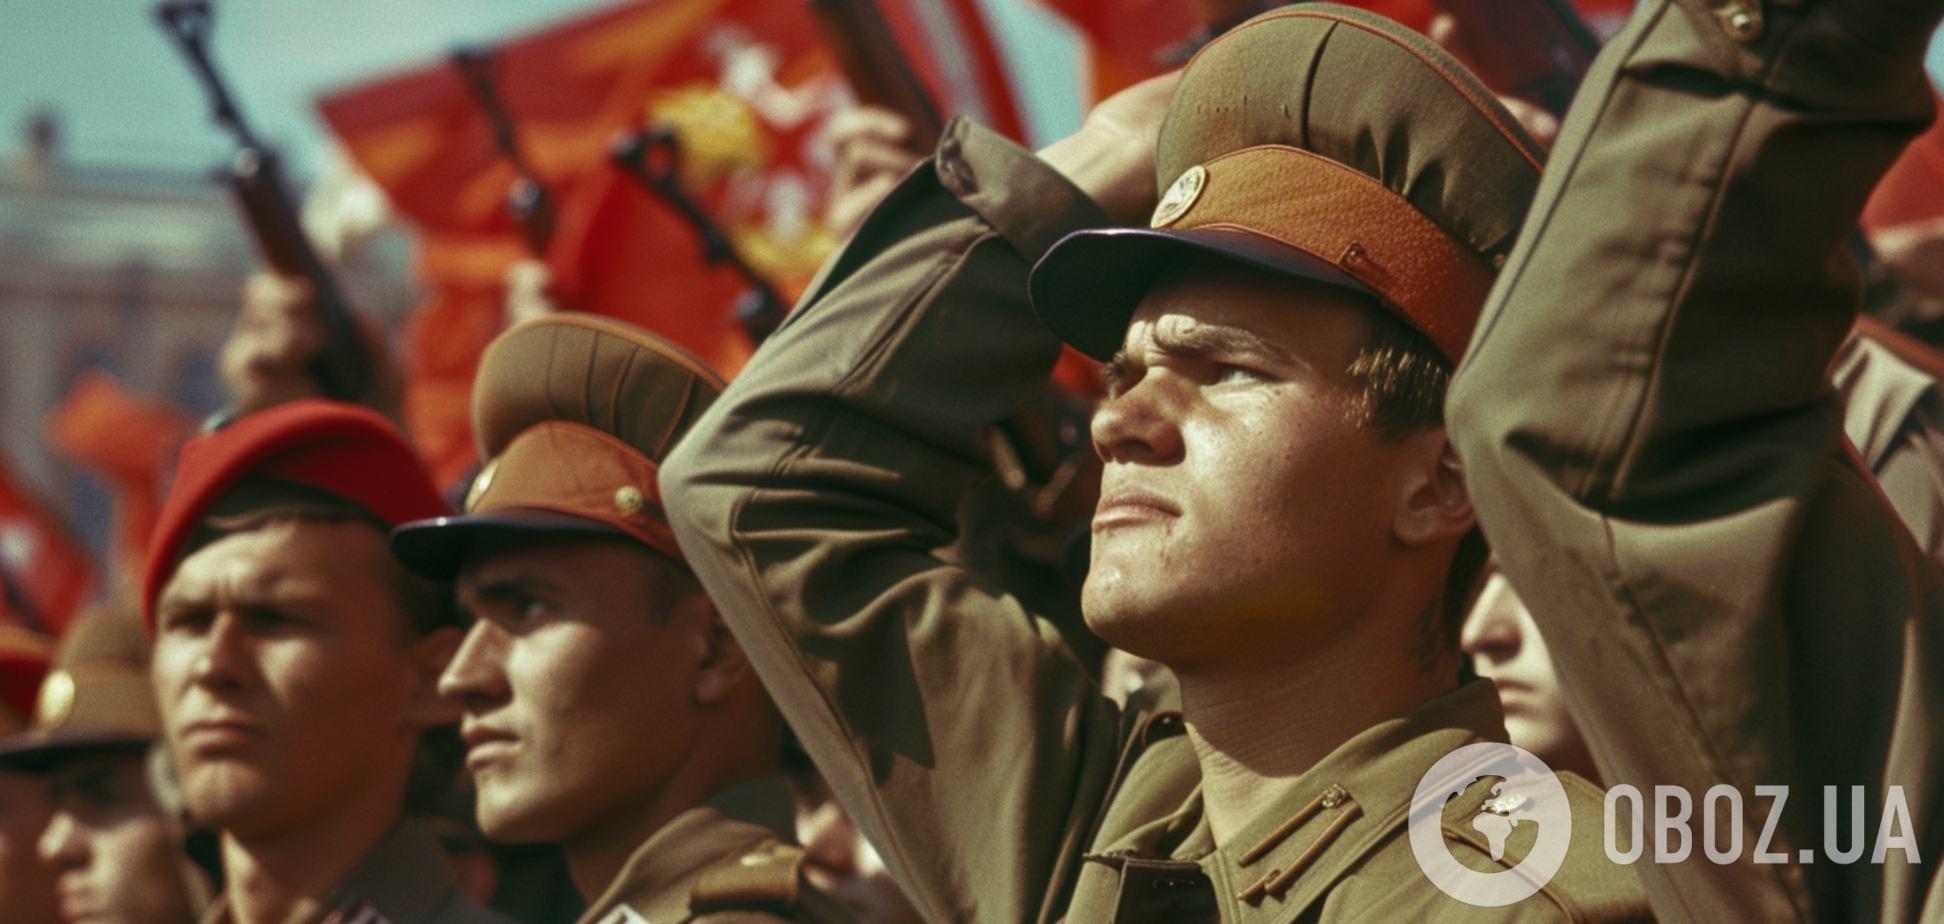 Депортации, запреты и погромы: какой на самом деле была 'дружба народов' в СССР